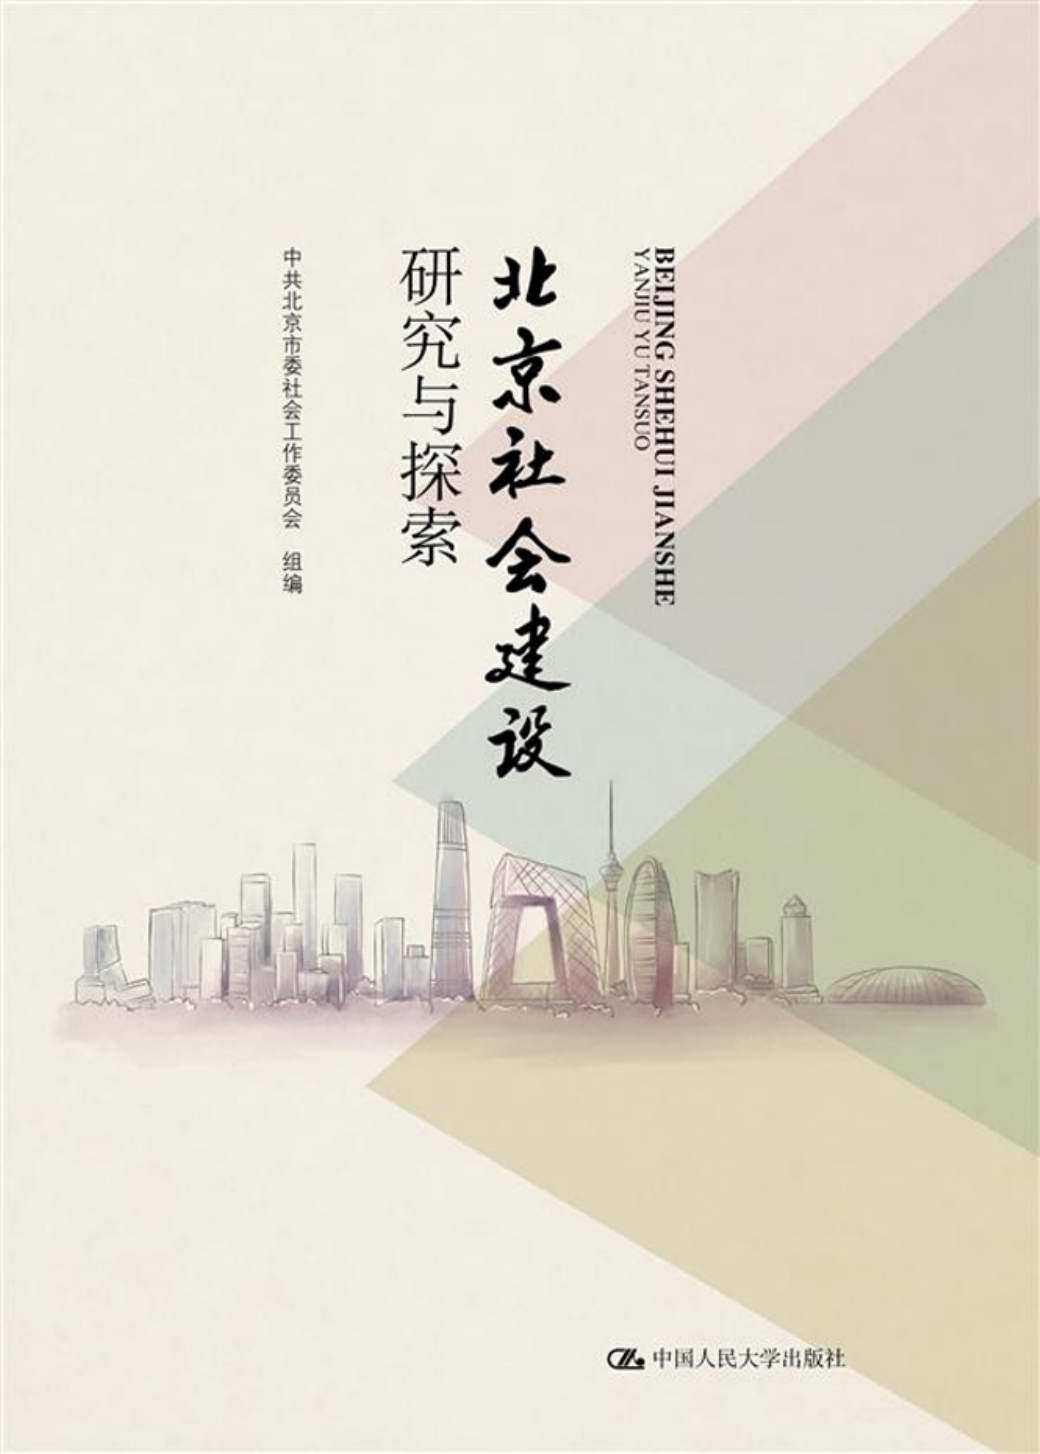 北京社会建设研究与探索